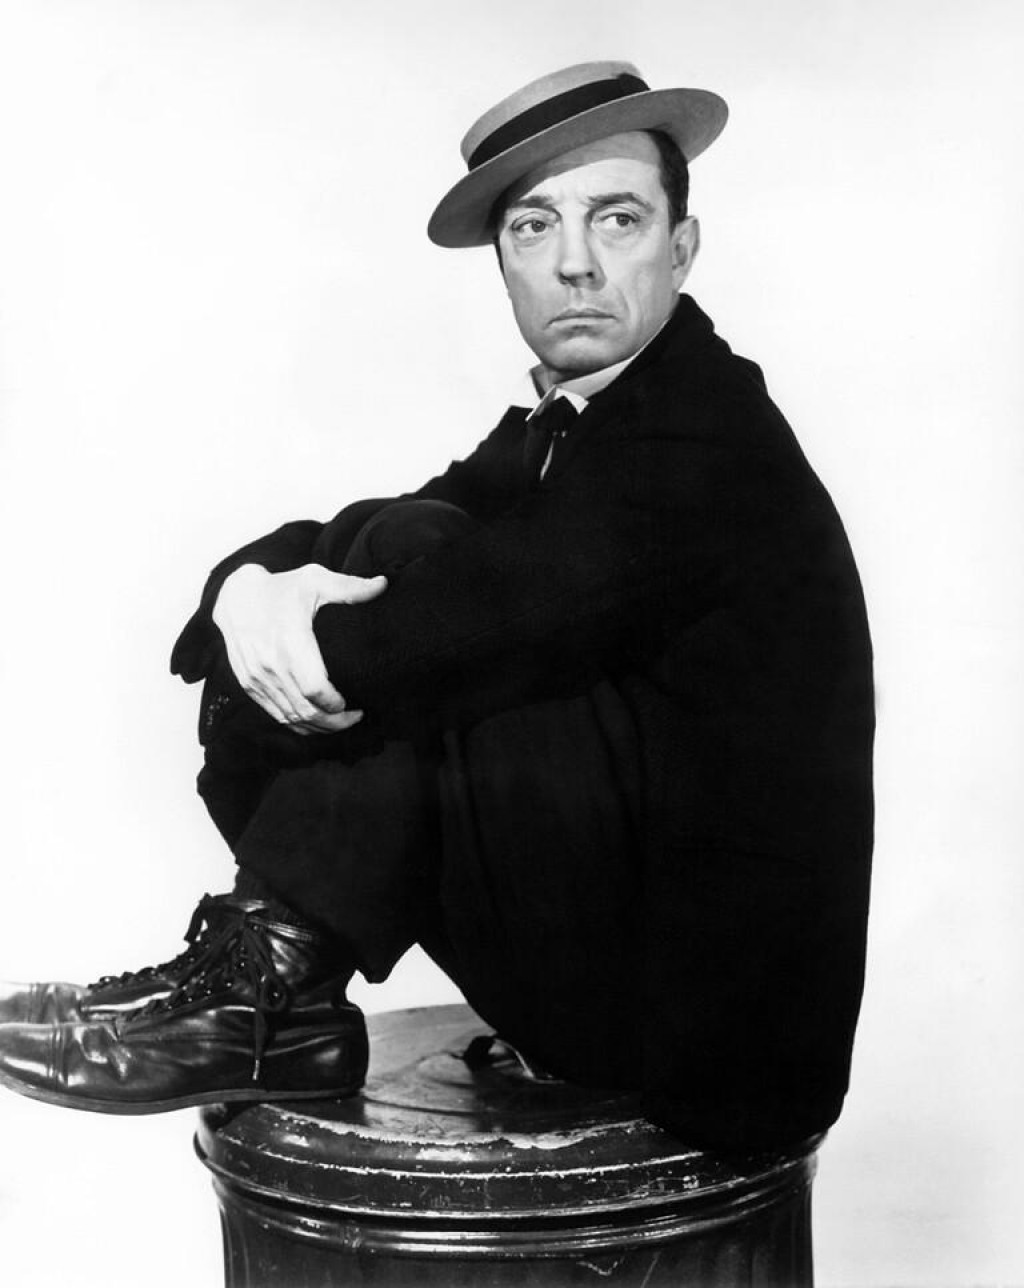 Nije šala, Buster Keaton naći će se u trogirskoj jezgri&lt;br /&gt;
 